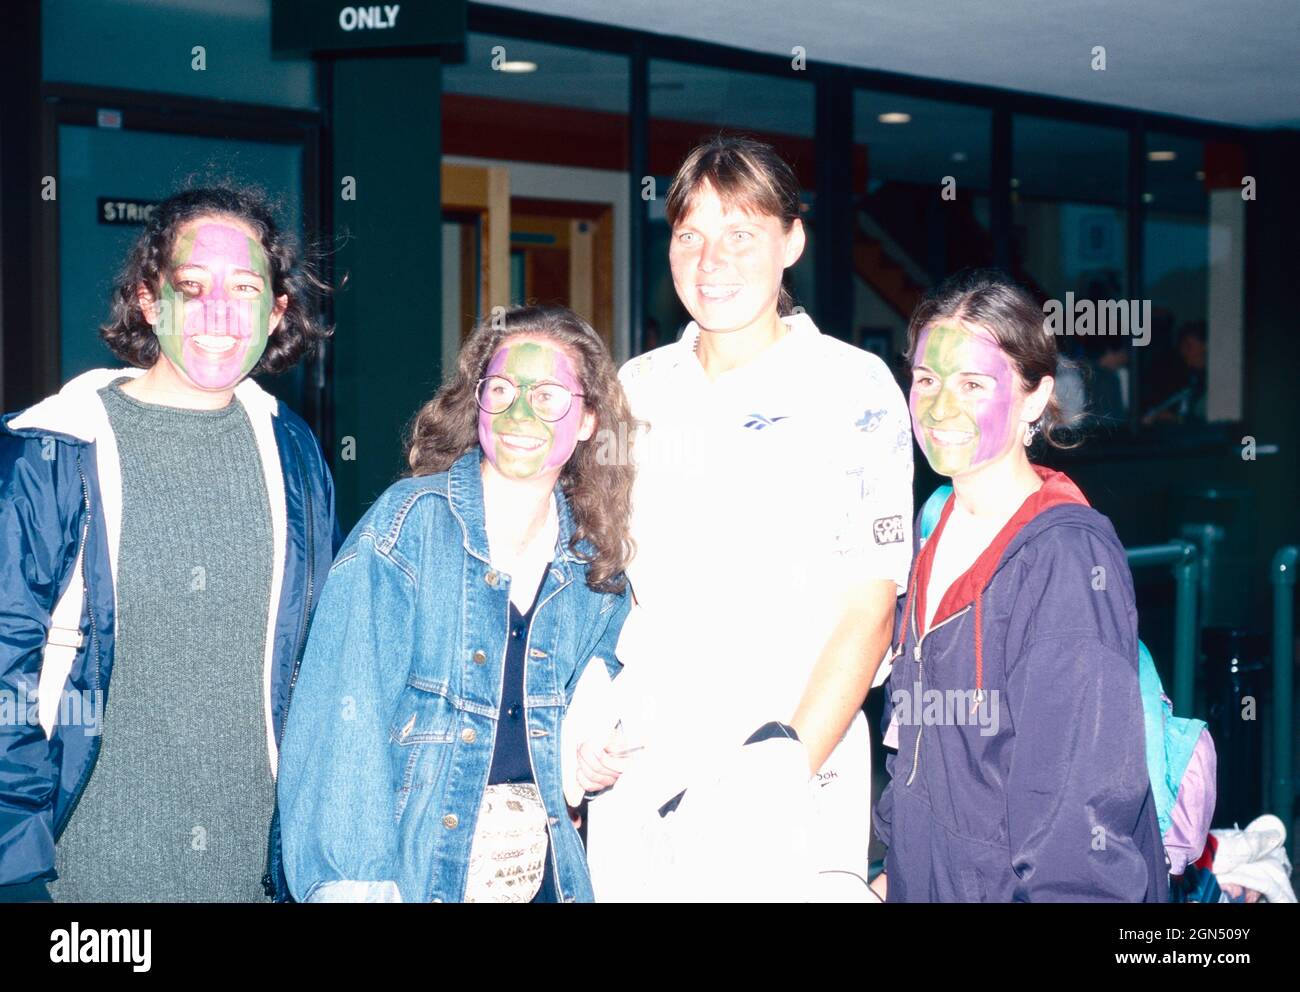 Amerikanische Tennisspielerin Nicole Arendt mit Fans, 1990er Jahre Stockfoto